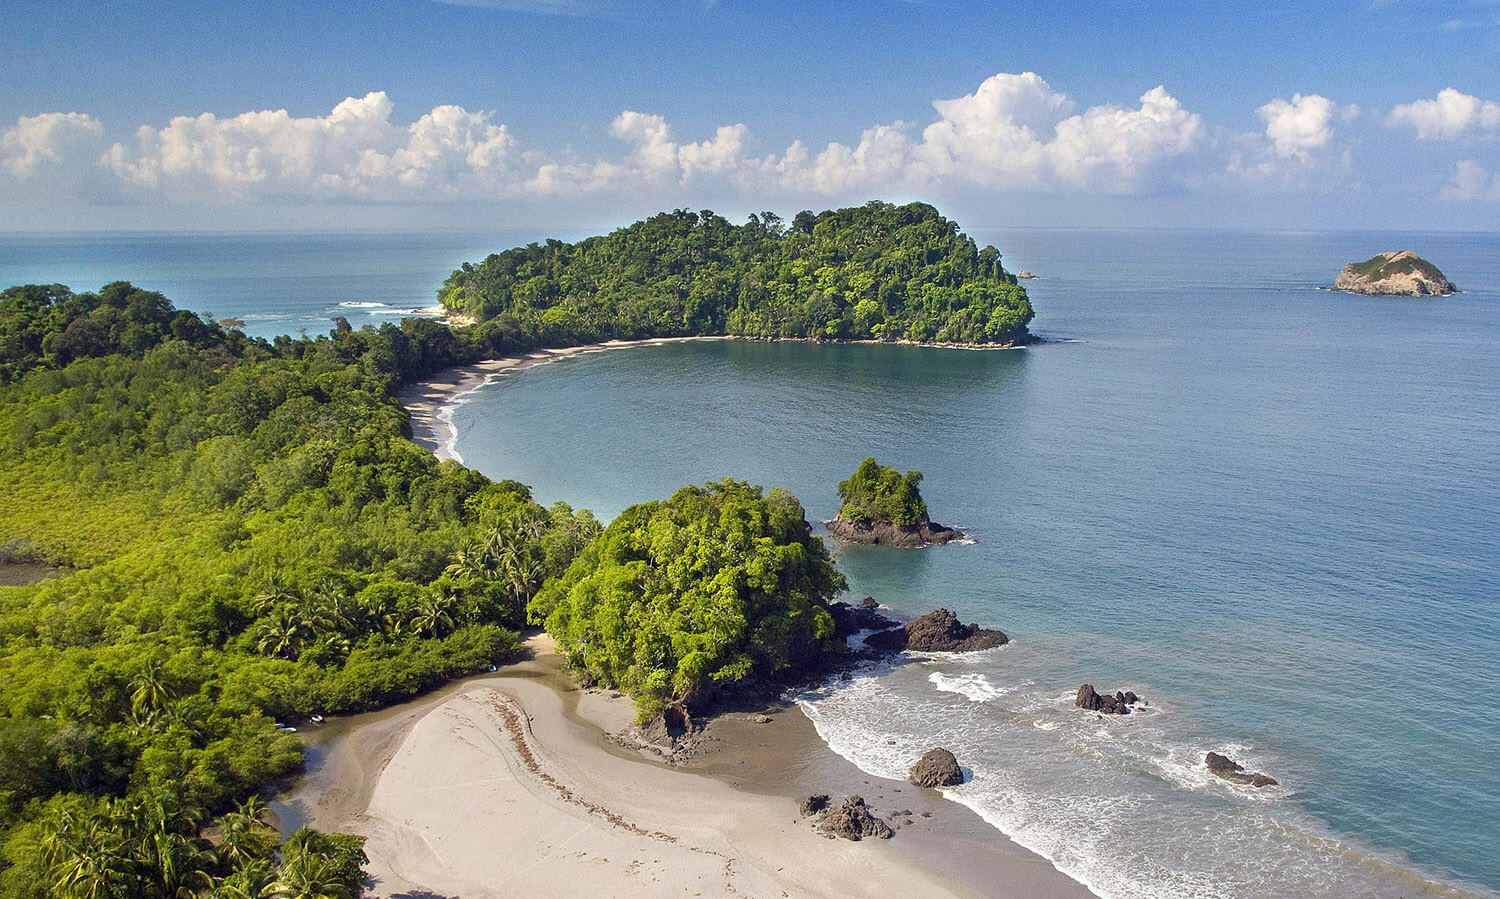 Esta playa se ubica dentro del Parque Nacional Manuel Antonio, a unos 100 kilómetros de San José, capital de Costa Rica, se ubica en el ranking 23 a nivel mundial.